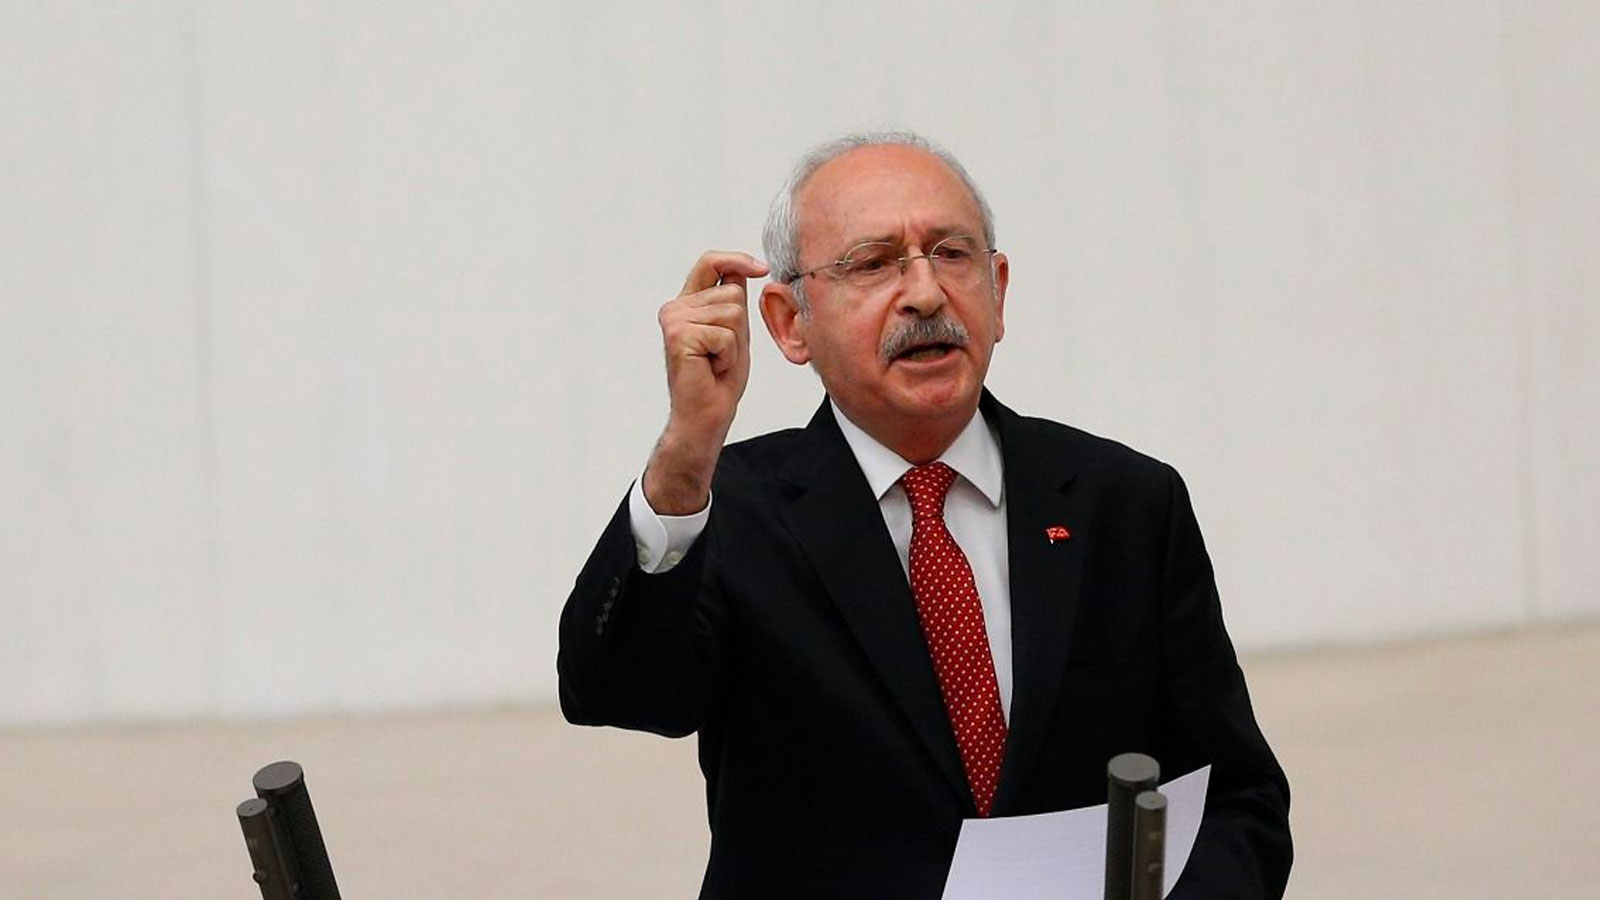 Kılıçdaroğlu’nun, Erdoğan’ın açtığı davalar nedeniyle “ifade özgürlüğü hakkının” ihlal edildiği kararı kesinleşti